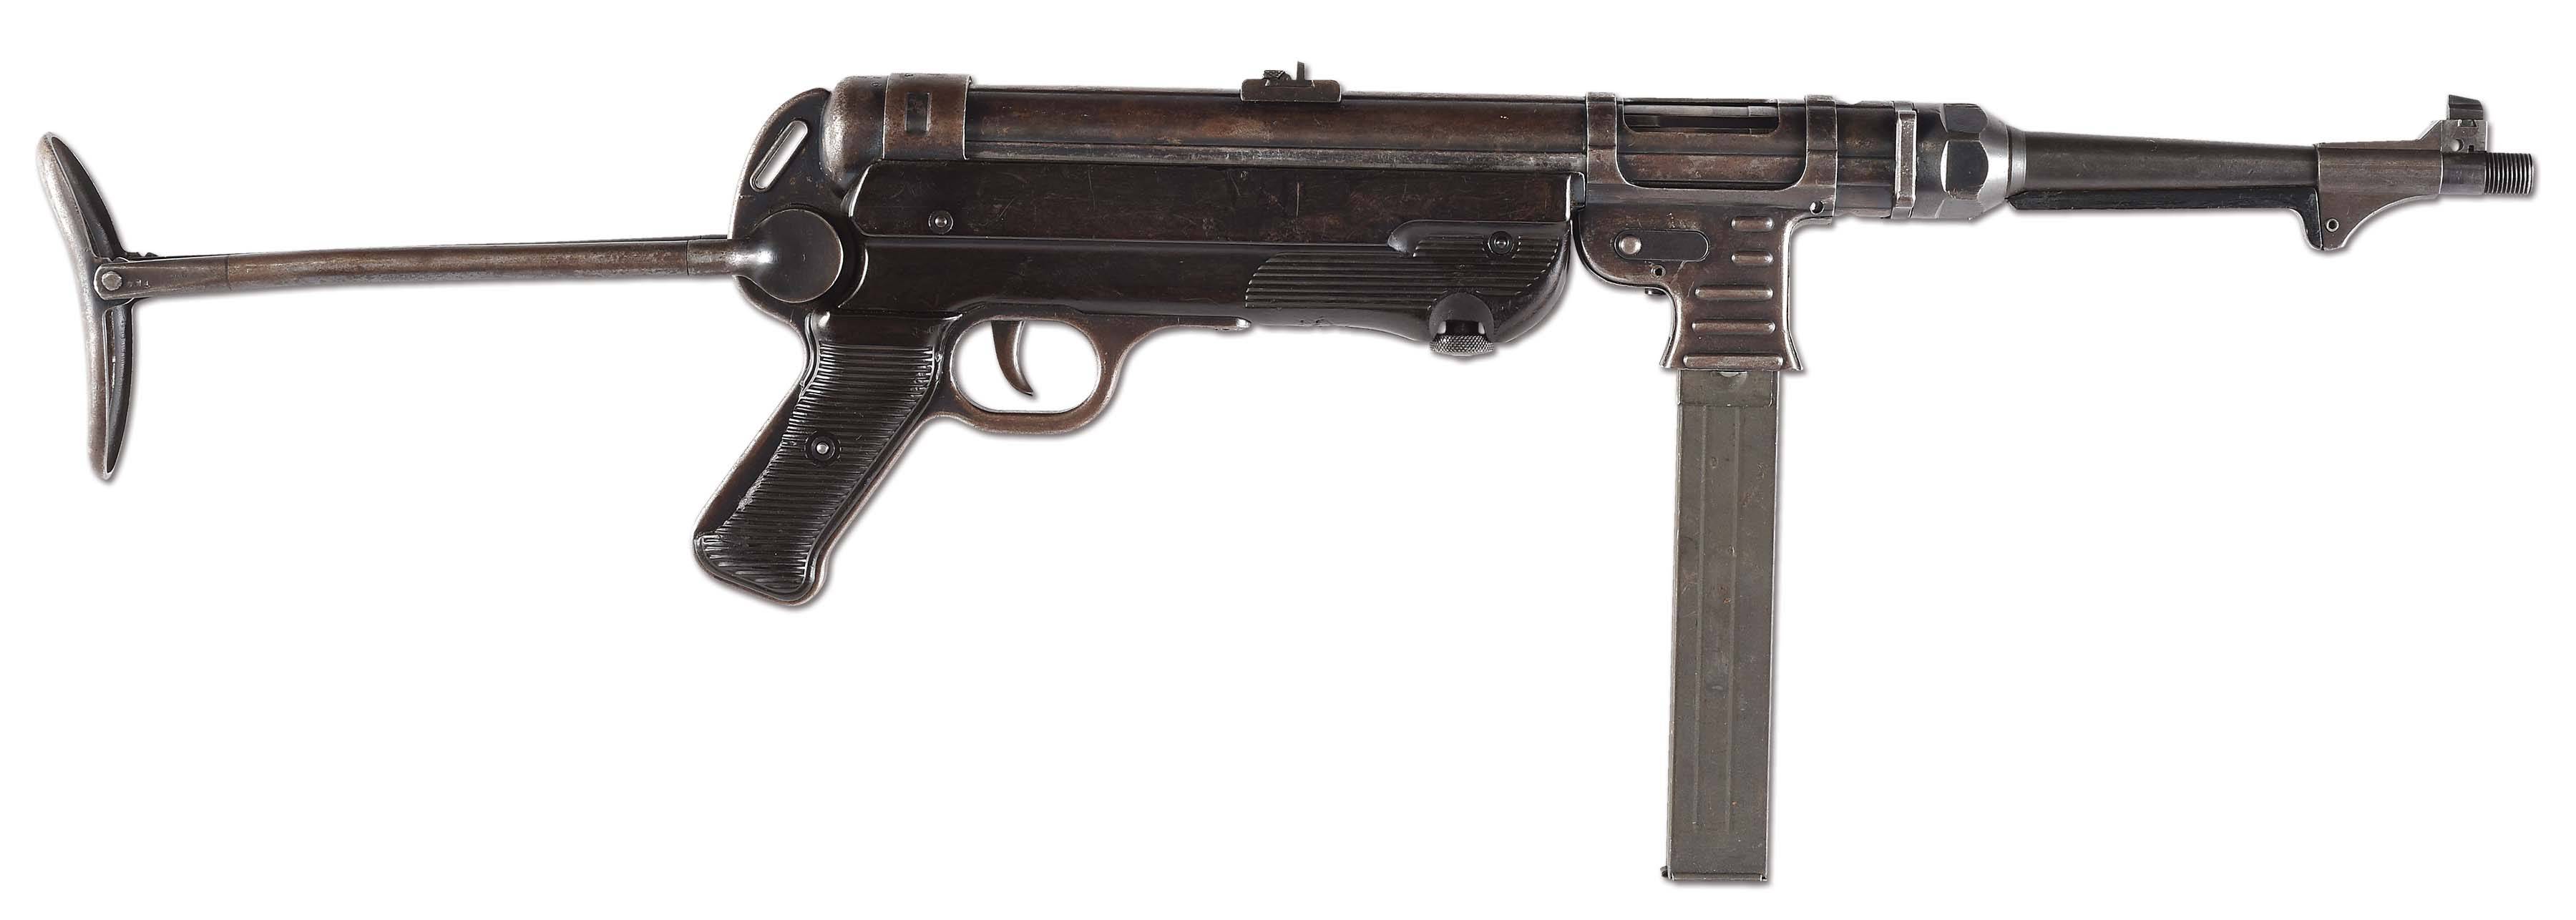 Mp-40 – основной пистолет-пулемёт вермахта